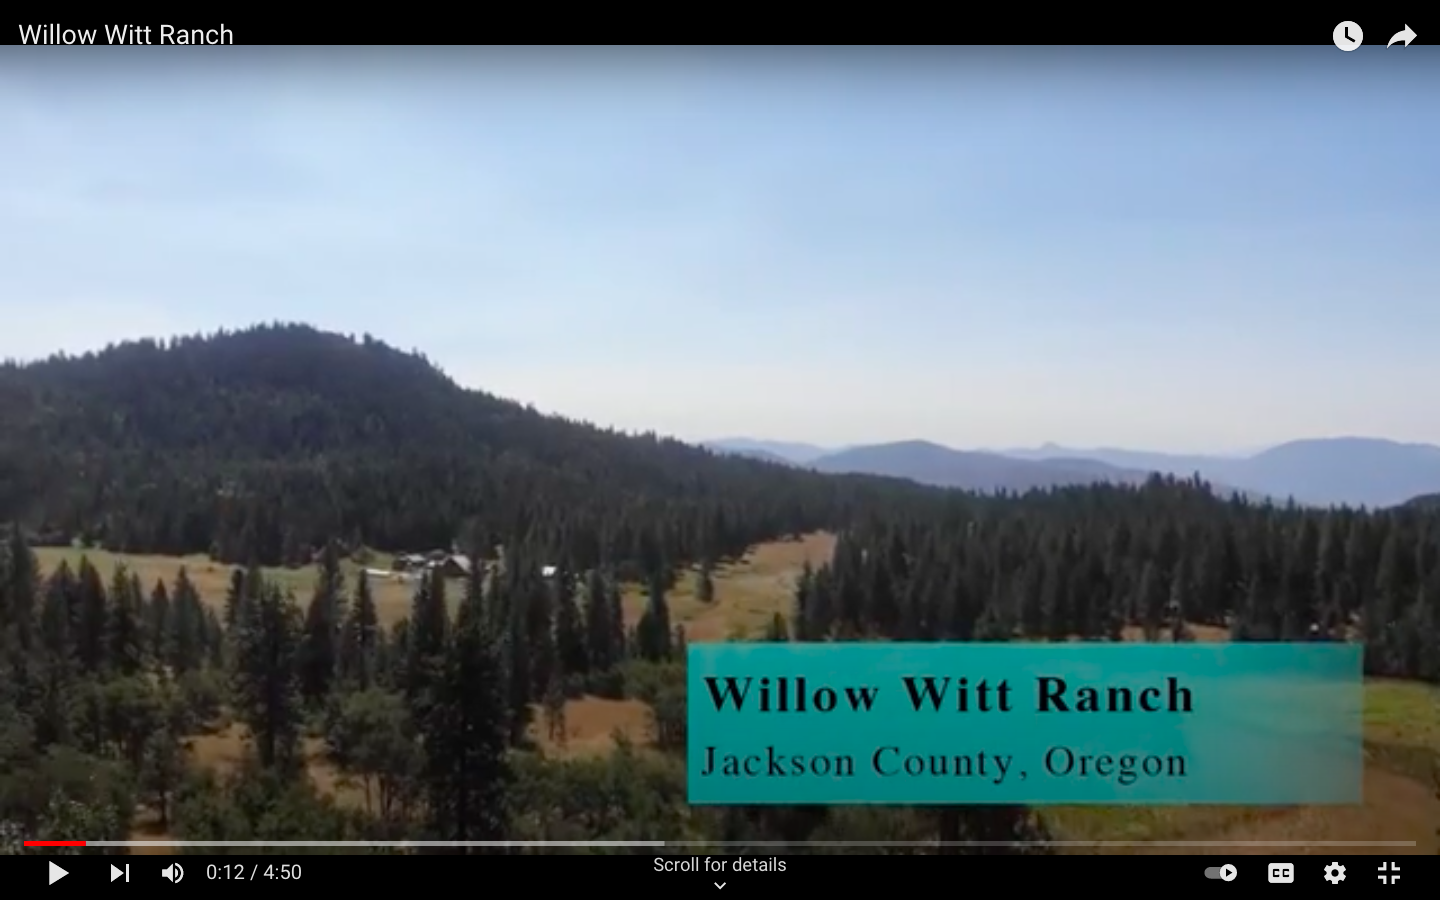 Willow Witt Ranch